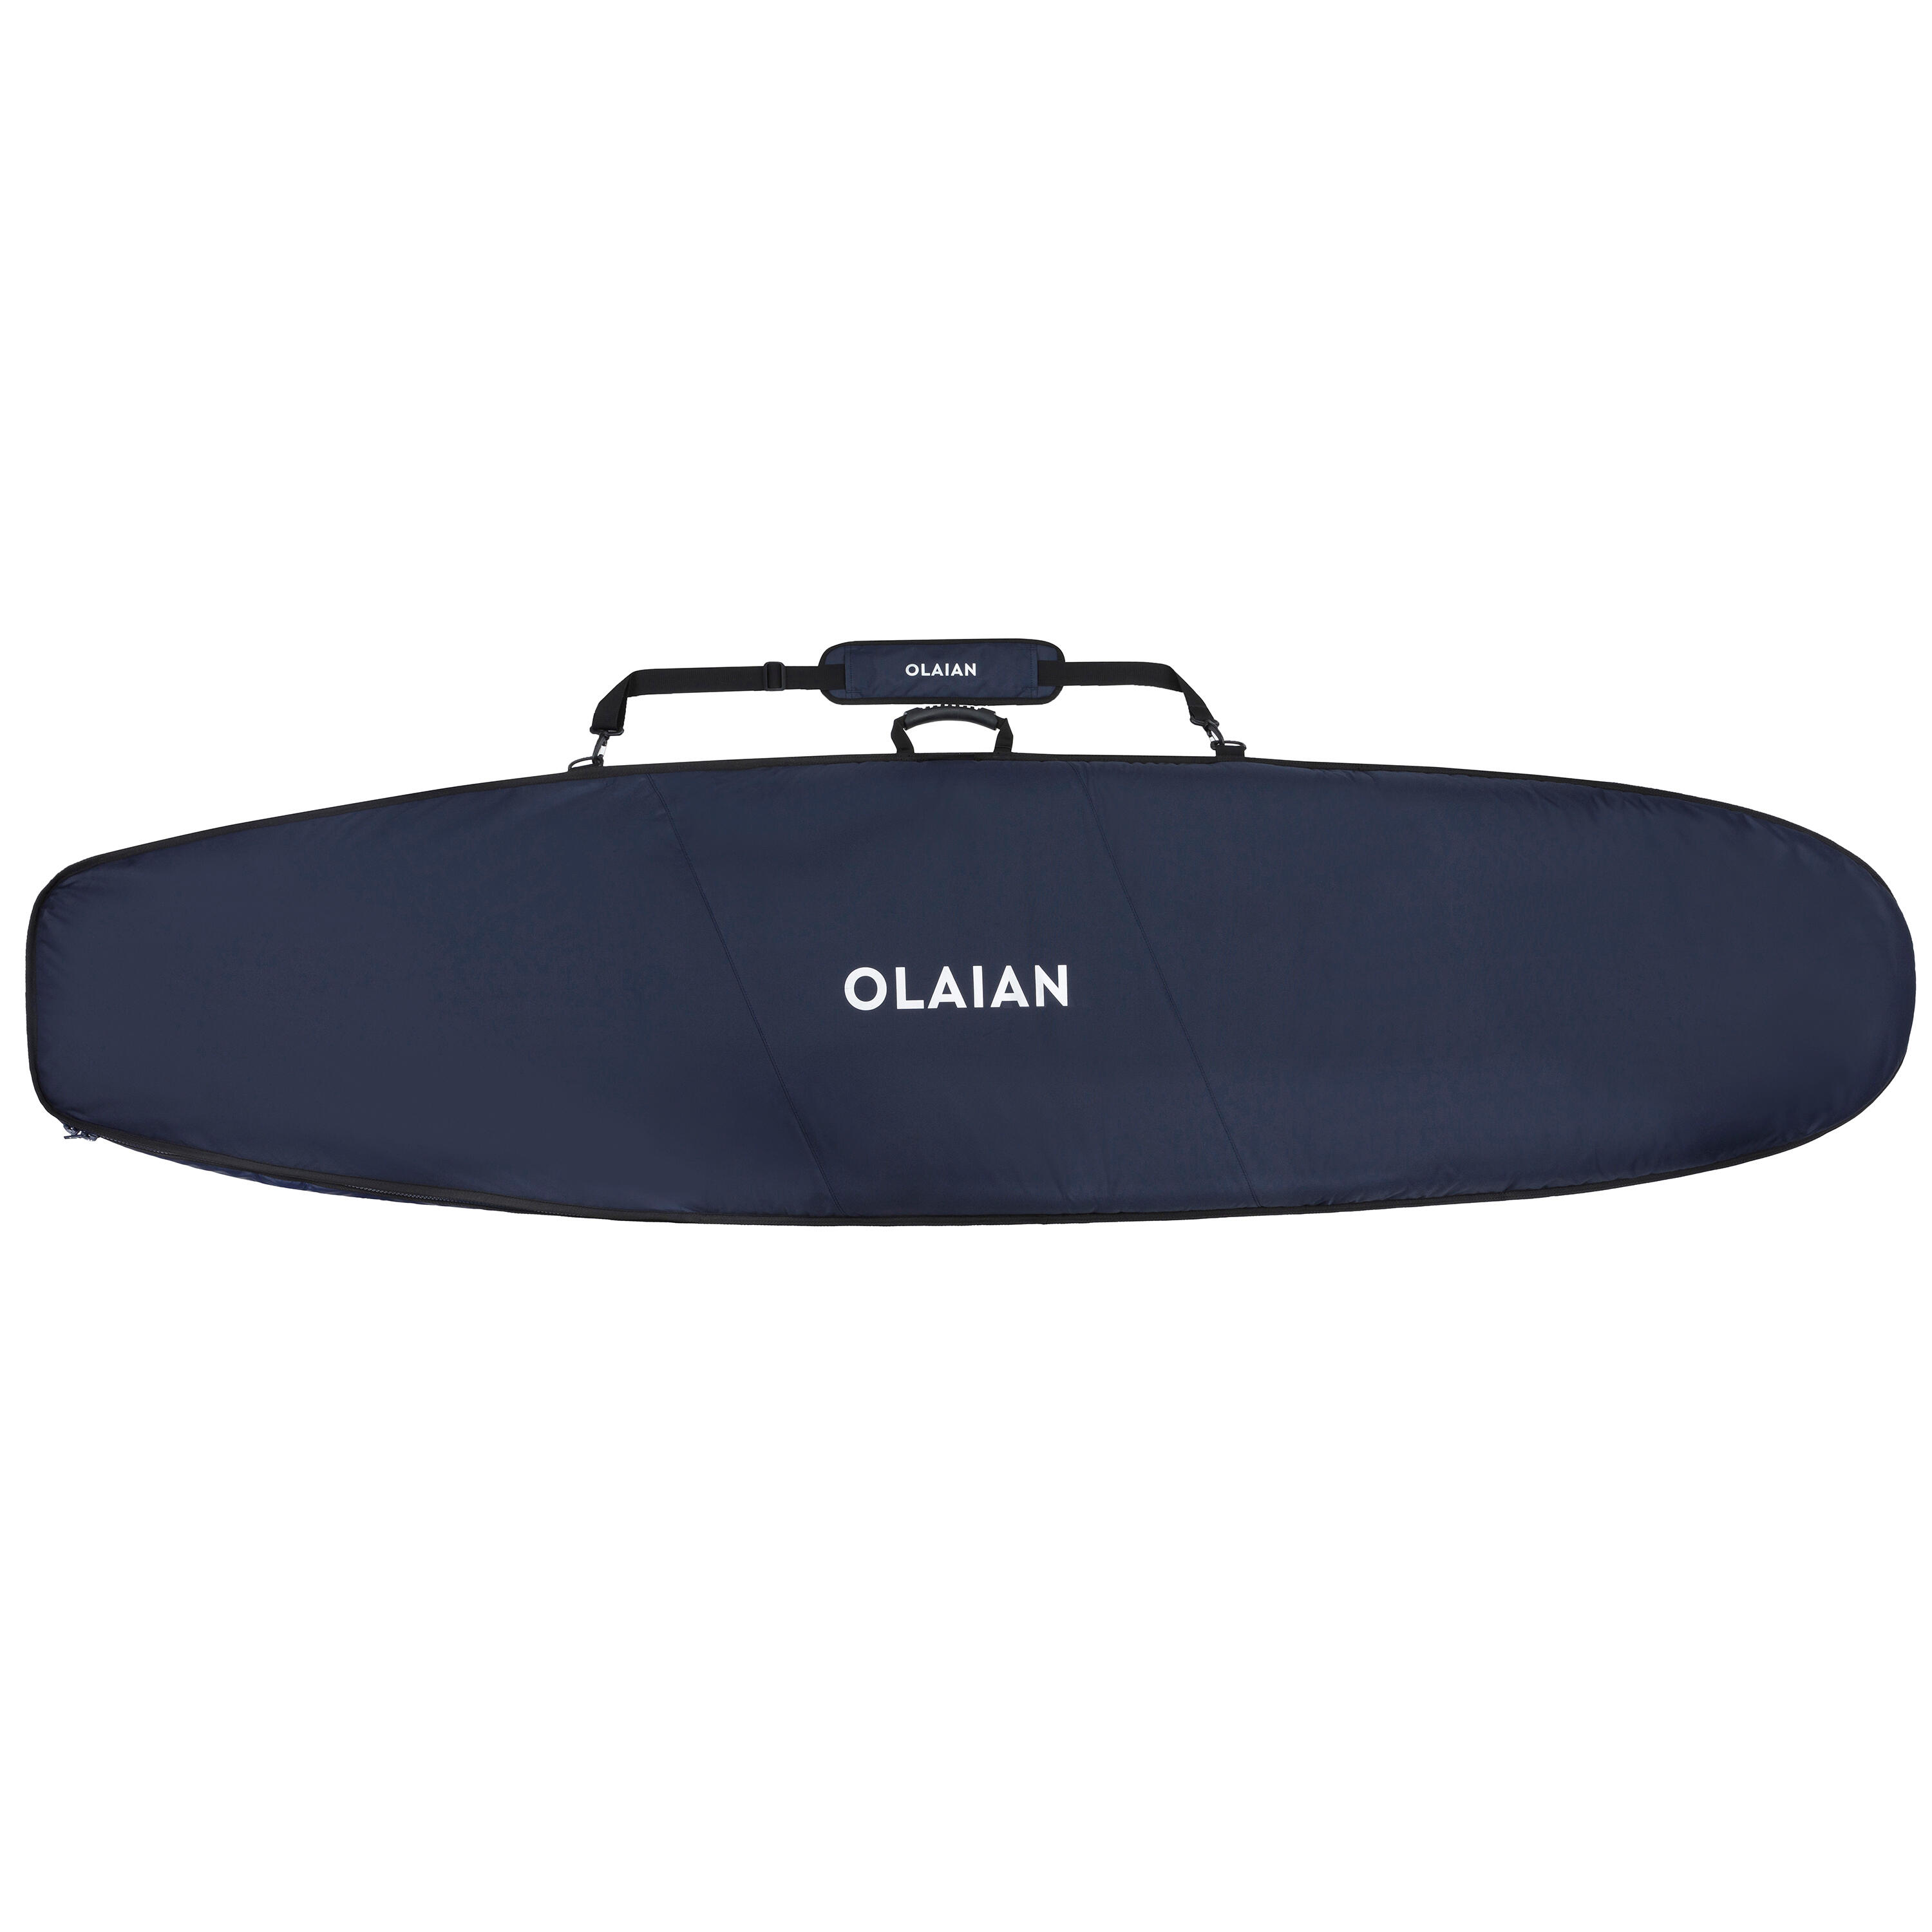 OLAIAN Boardbag Surfboardd 900 max. 8'2